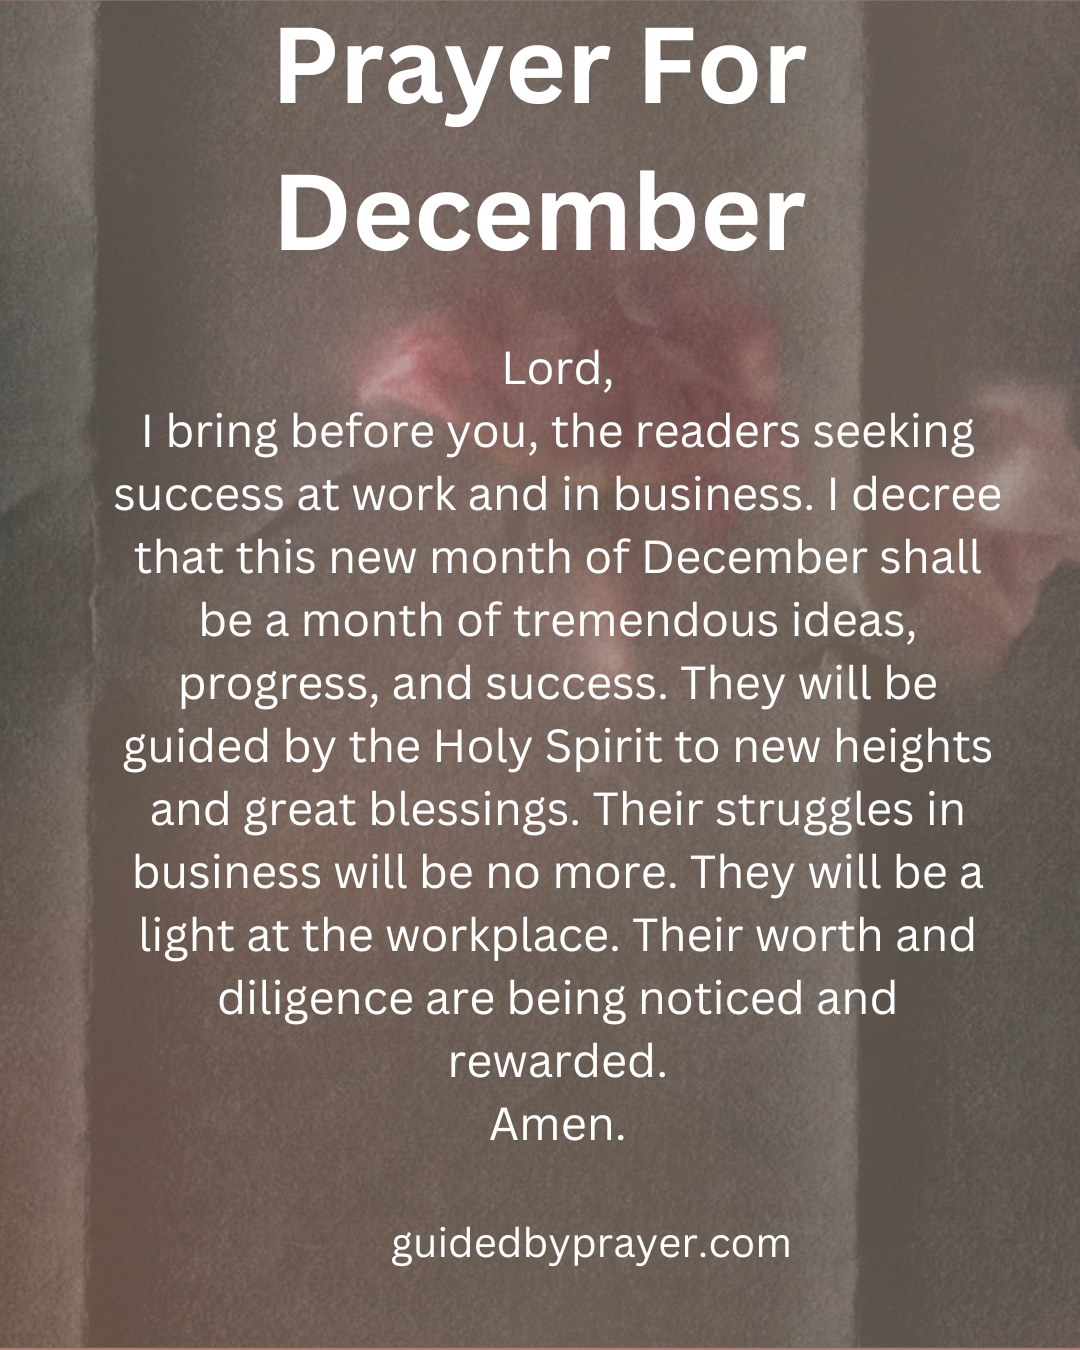 Prayer For December Guided by Prayer